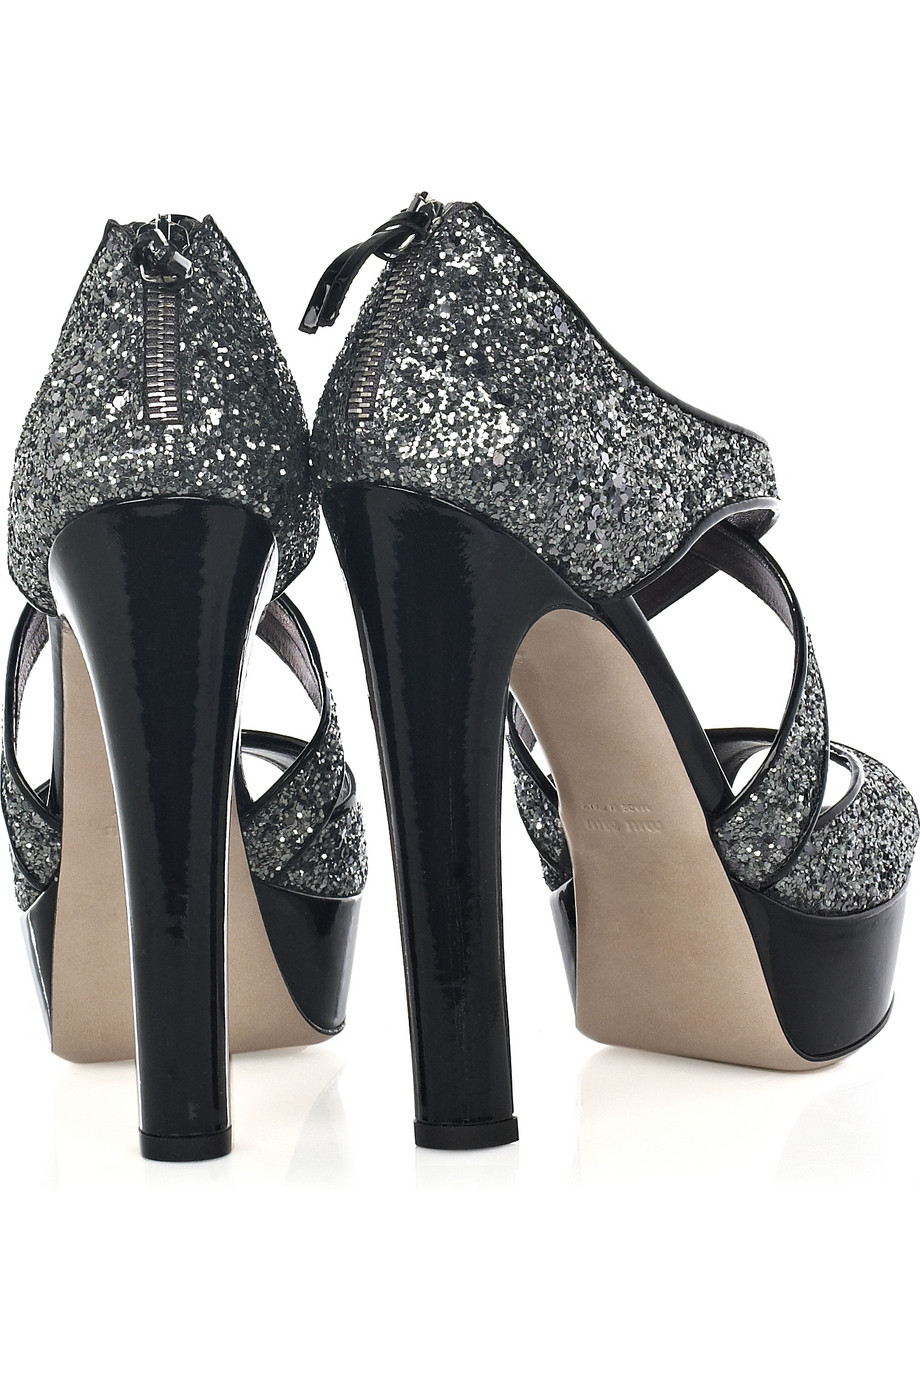 Miu Miu Glitter-embellished Platform Sandals in Silver (Metallic) - Lyst